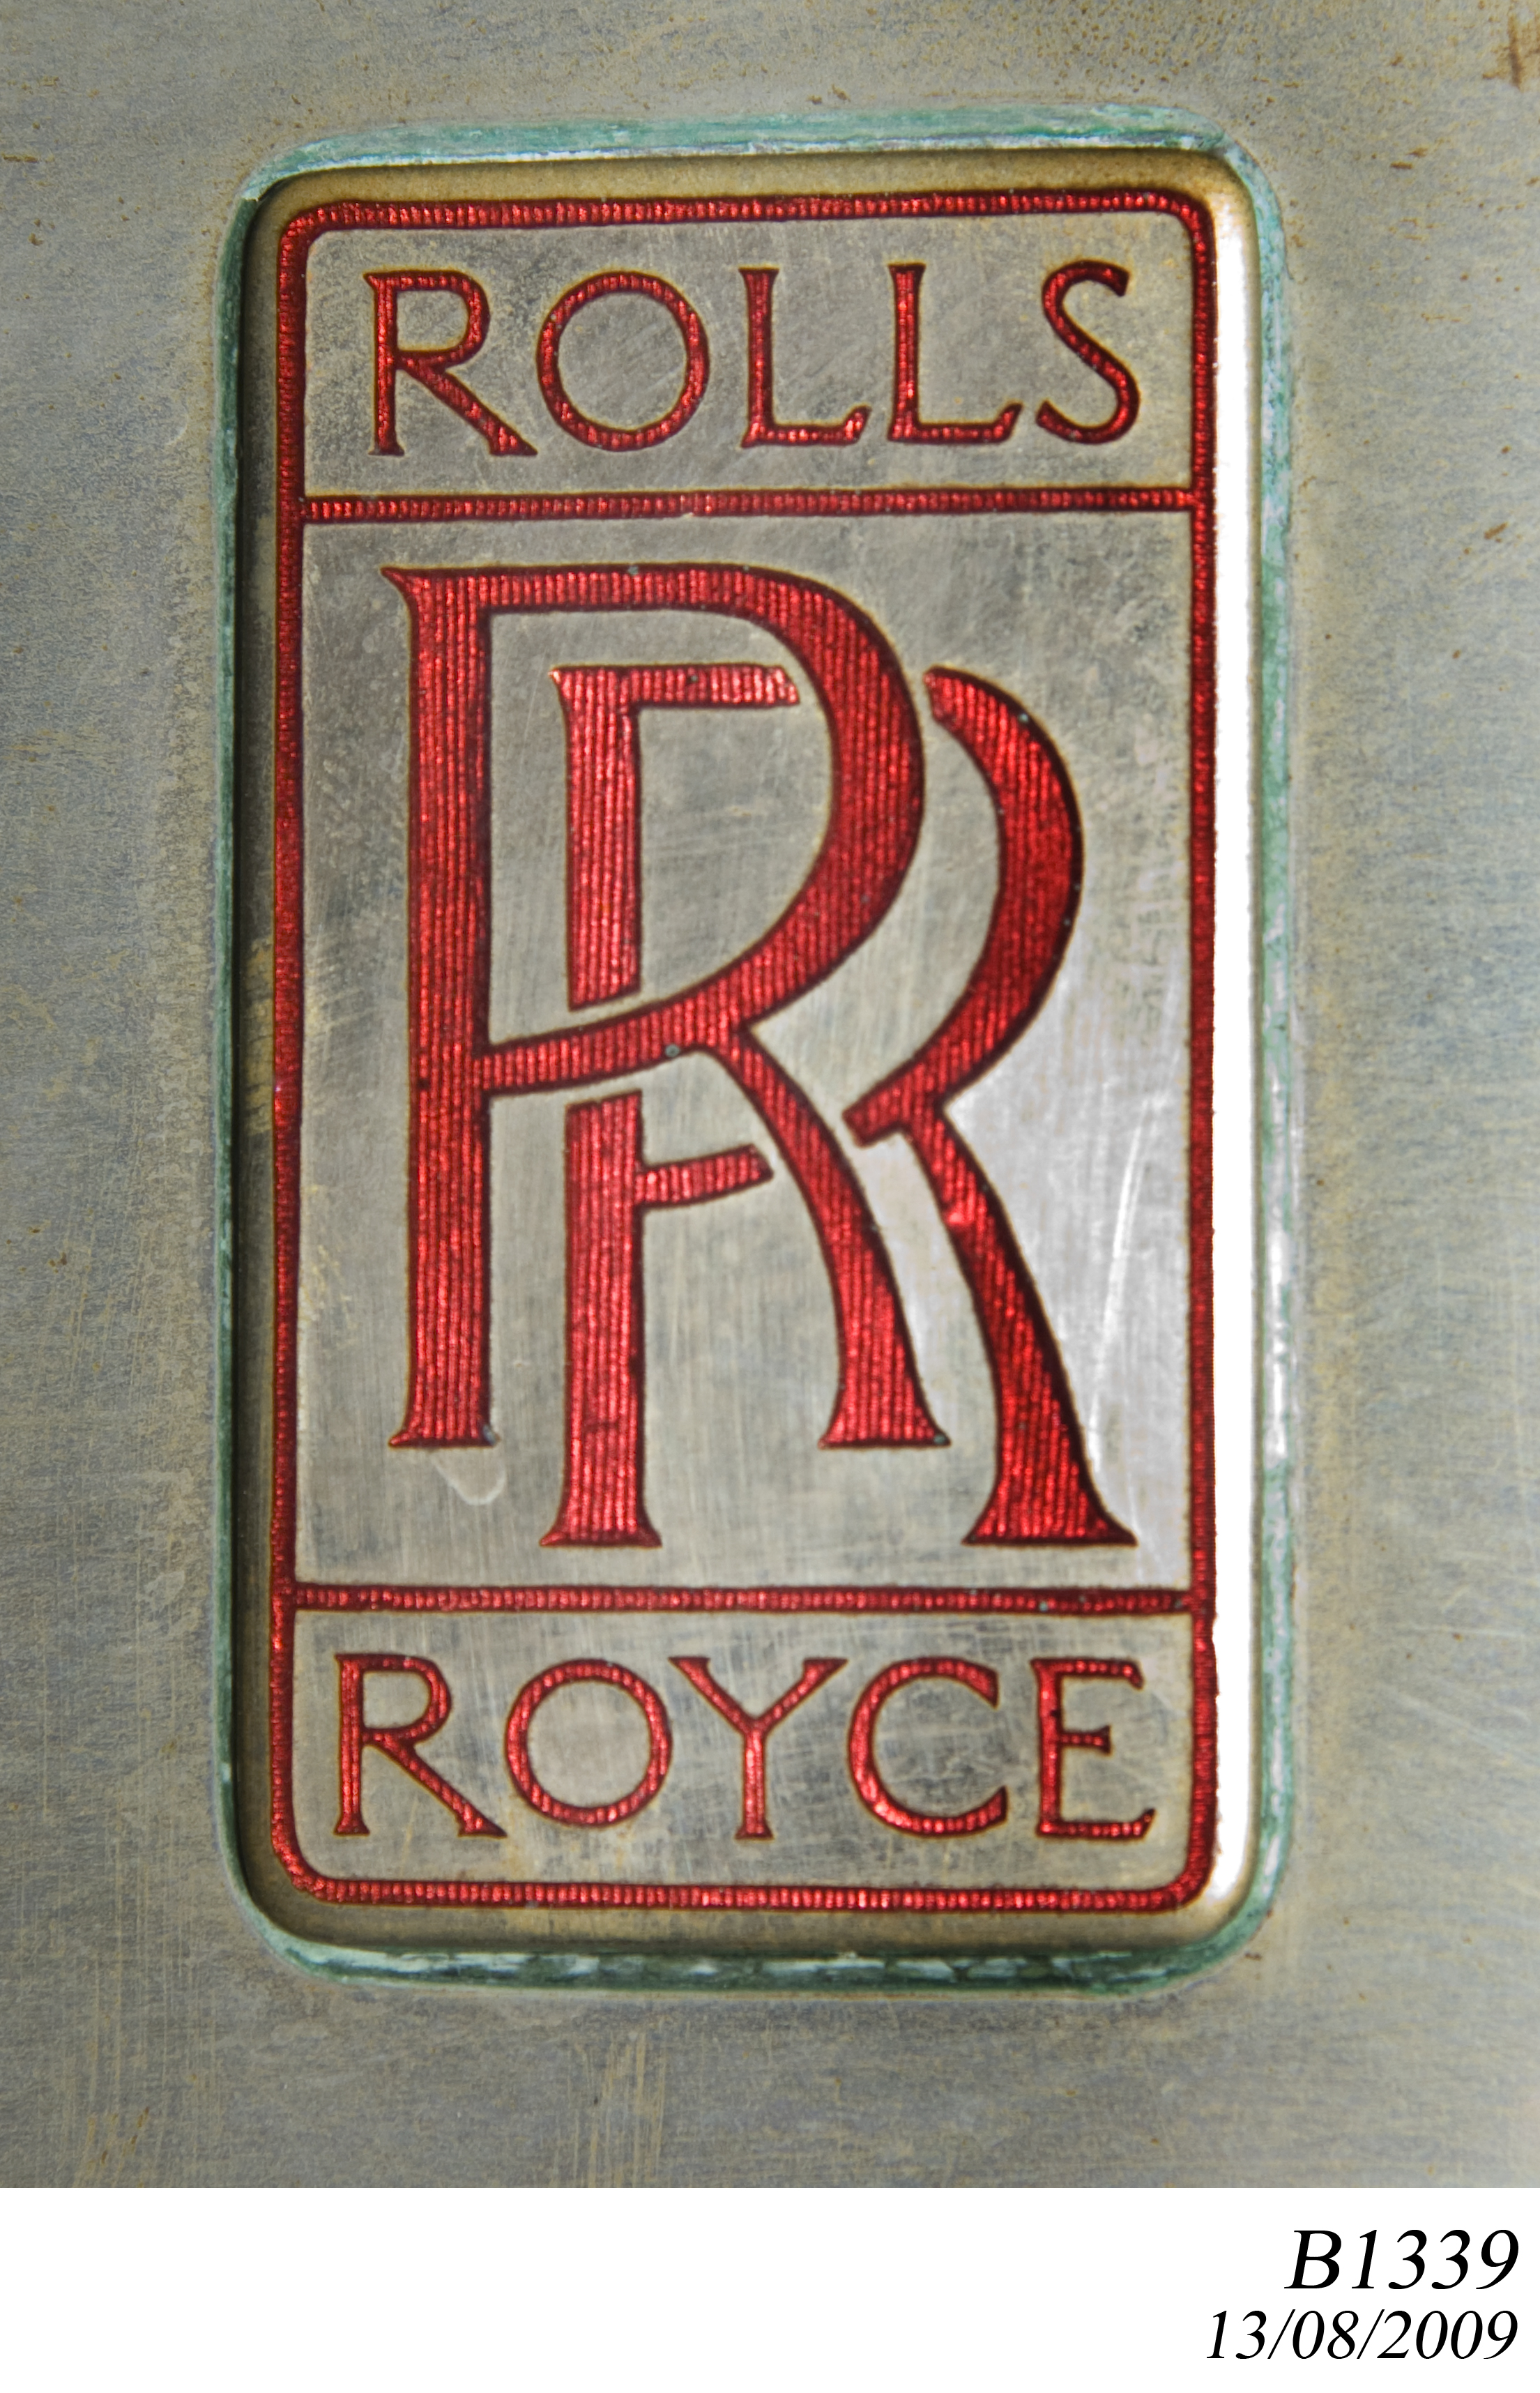 1925 Rolls-Royce Twenty 20 HP tourer